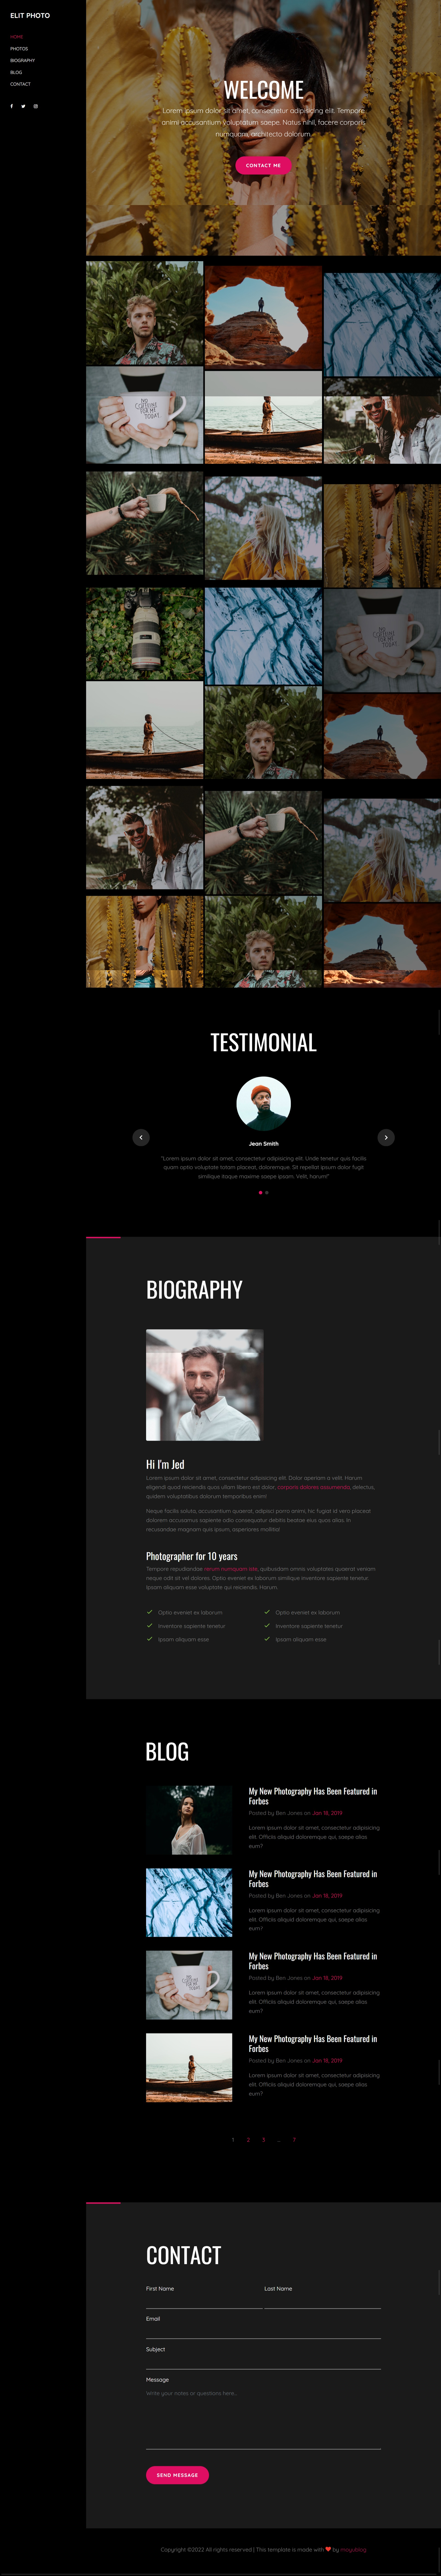 摄影作品展示网站设计，优质的HTML单页模板源码